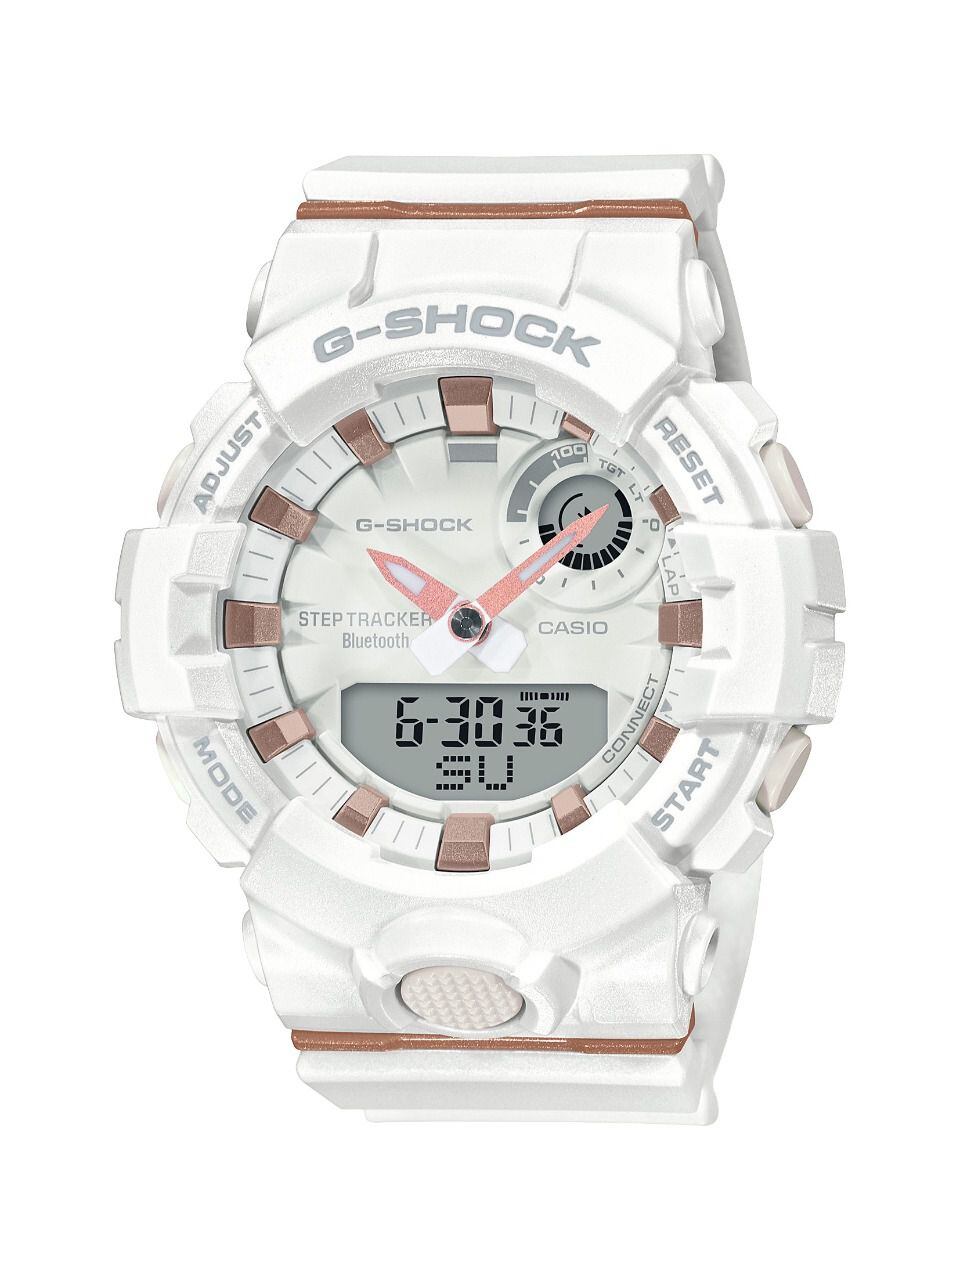 Reloj GMA-B800 perfecto para mamás deportistas (Foto: Instagram)